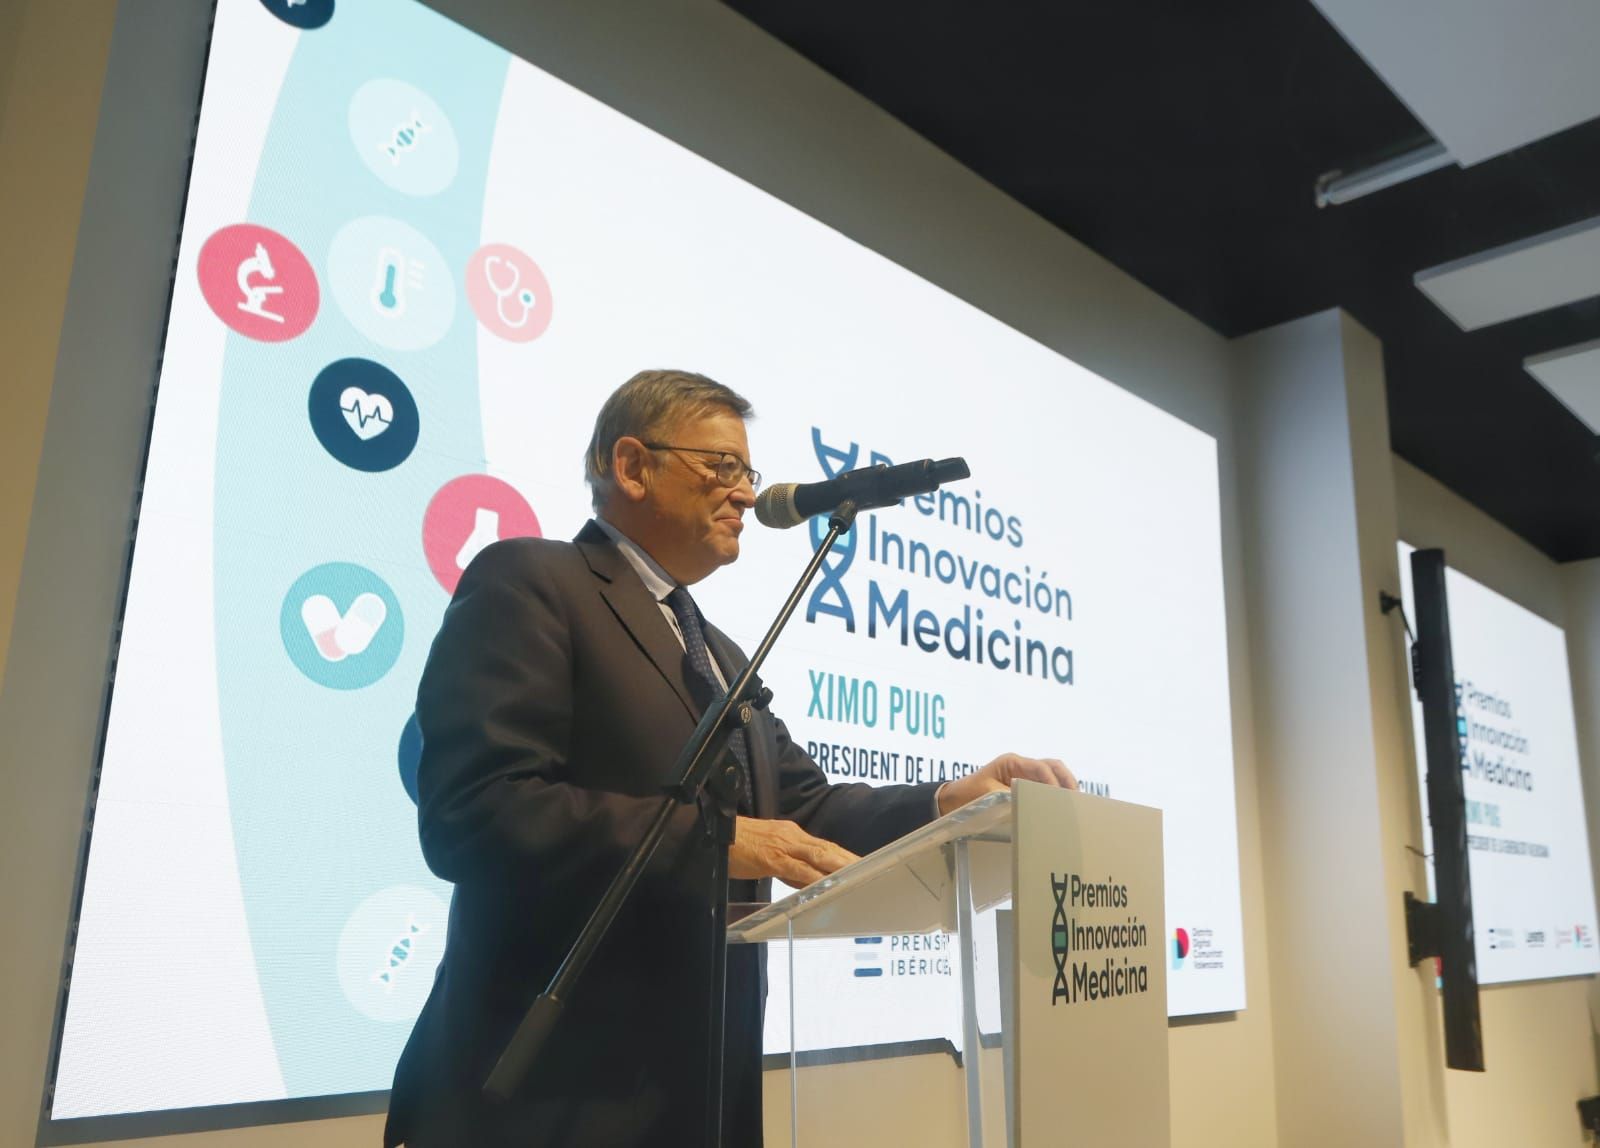 Levante-EMV reúne a la excelencia médica en los premios a la Innovación en Medicina